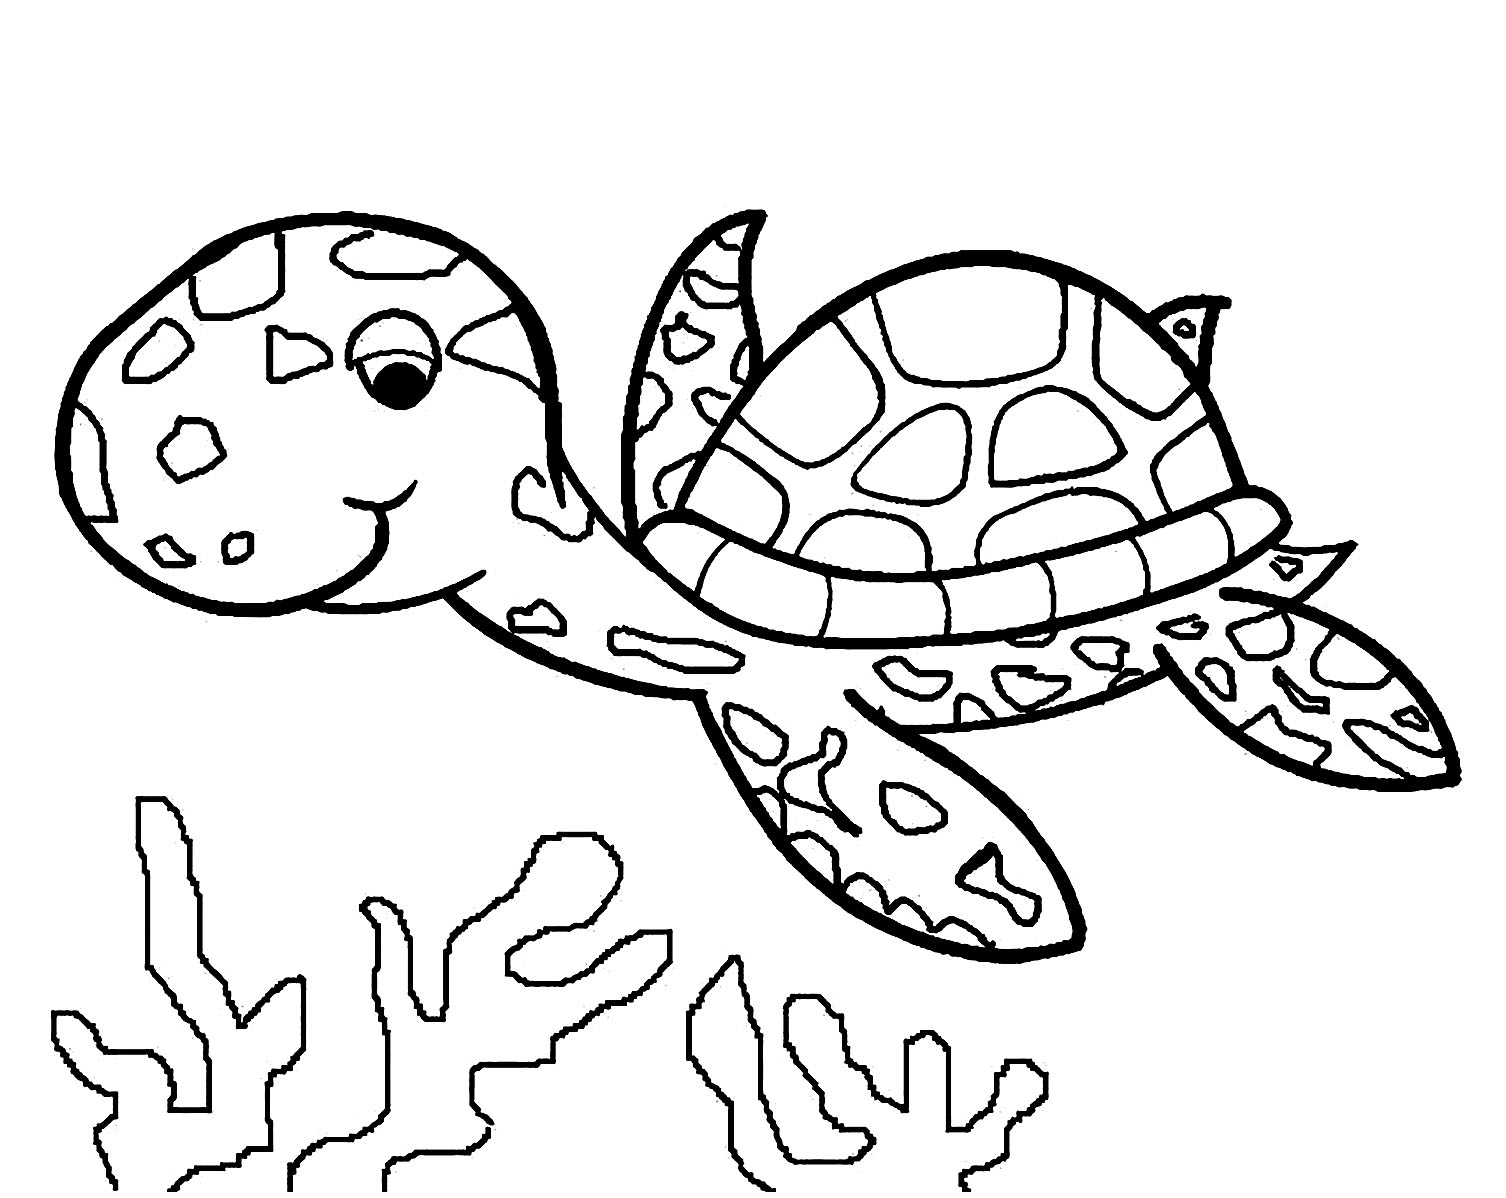 Image de tortue à télécharger et imprimer pour enfants